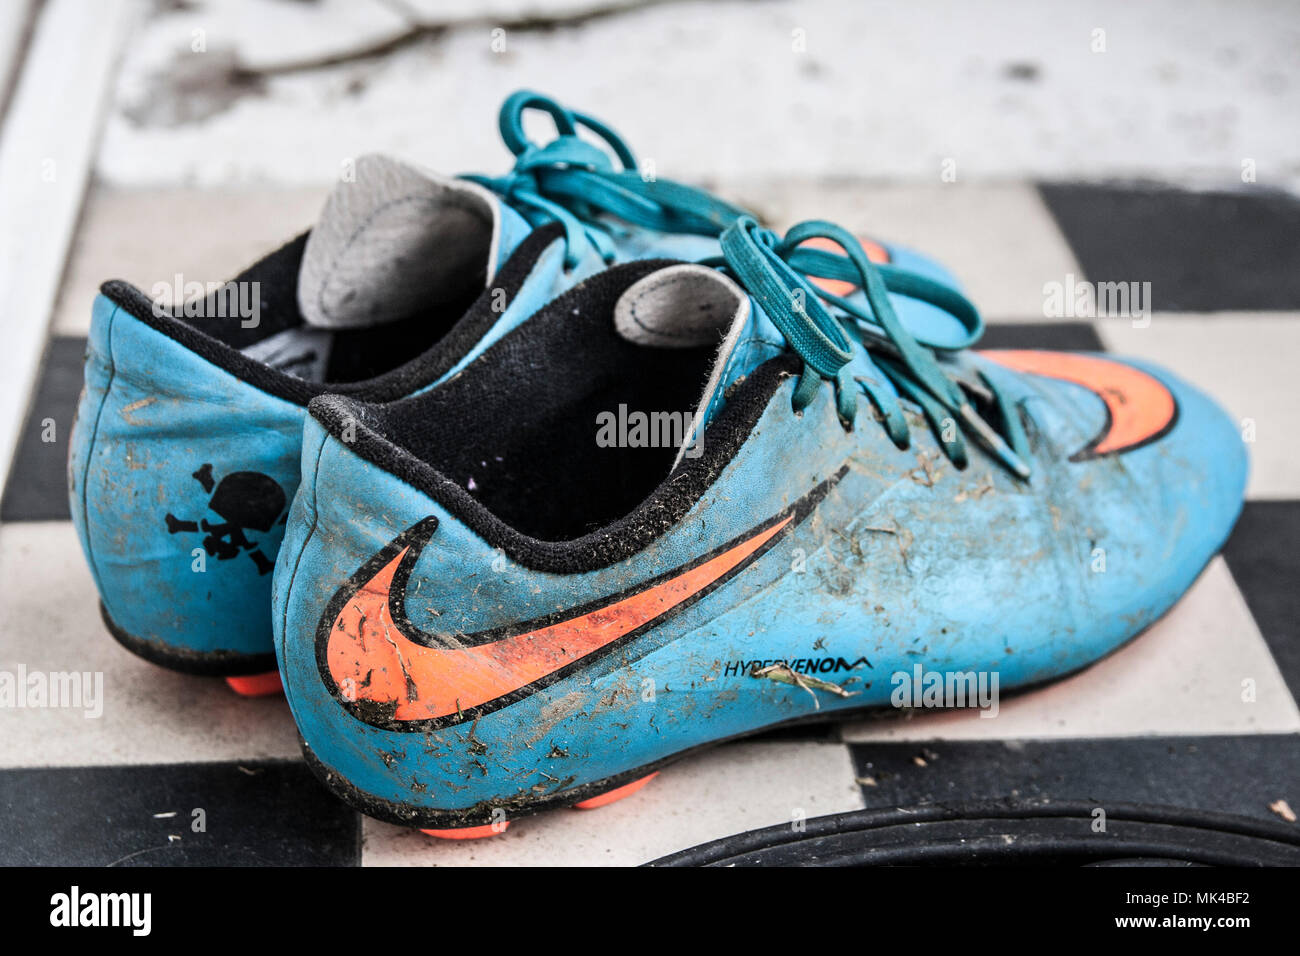 cheap girls football boots